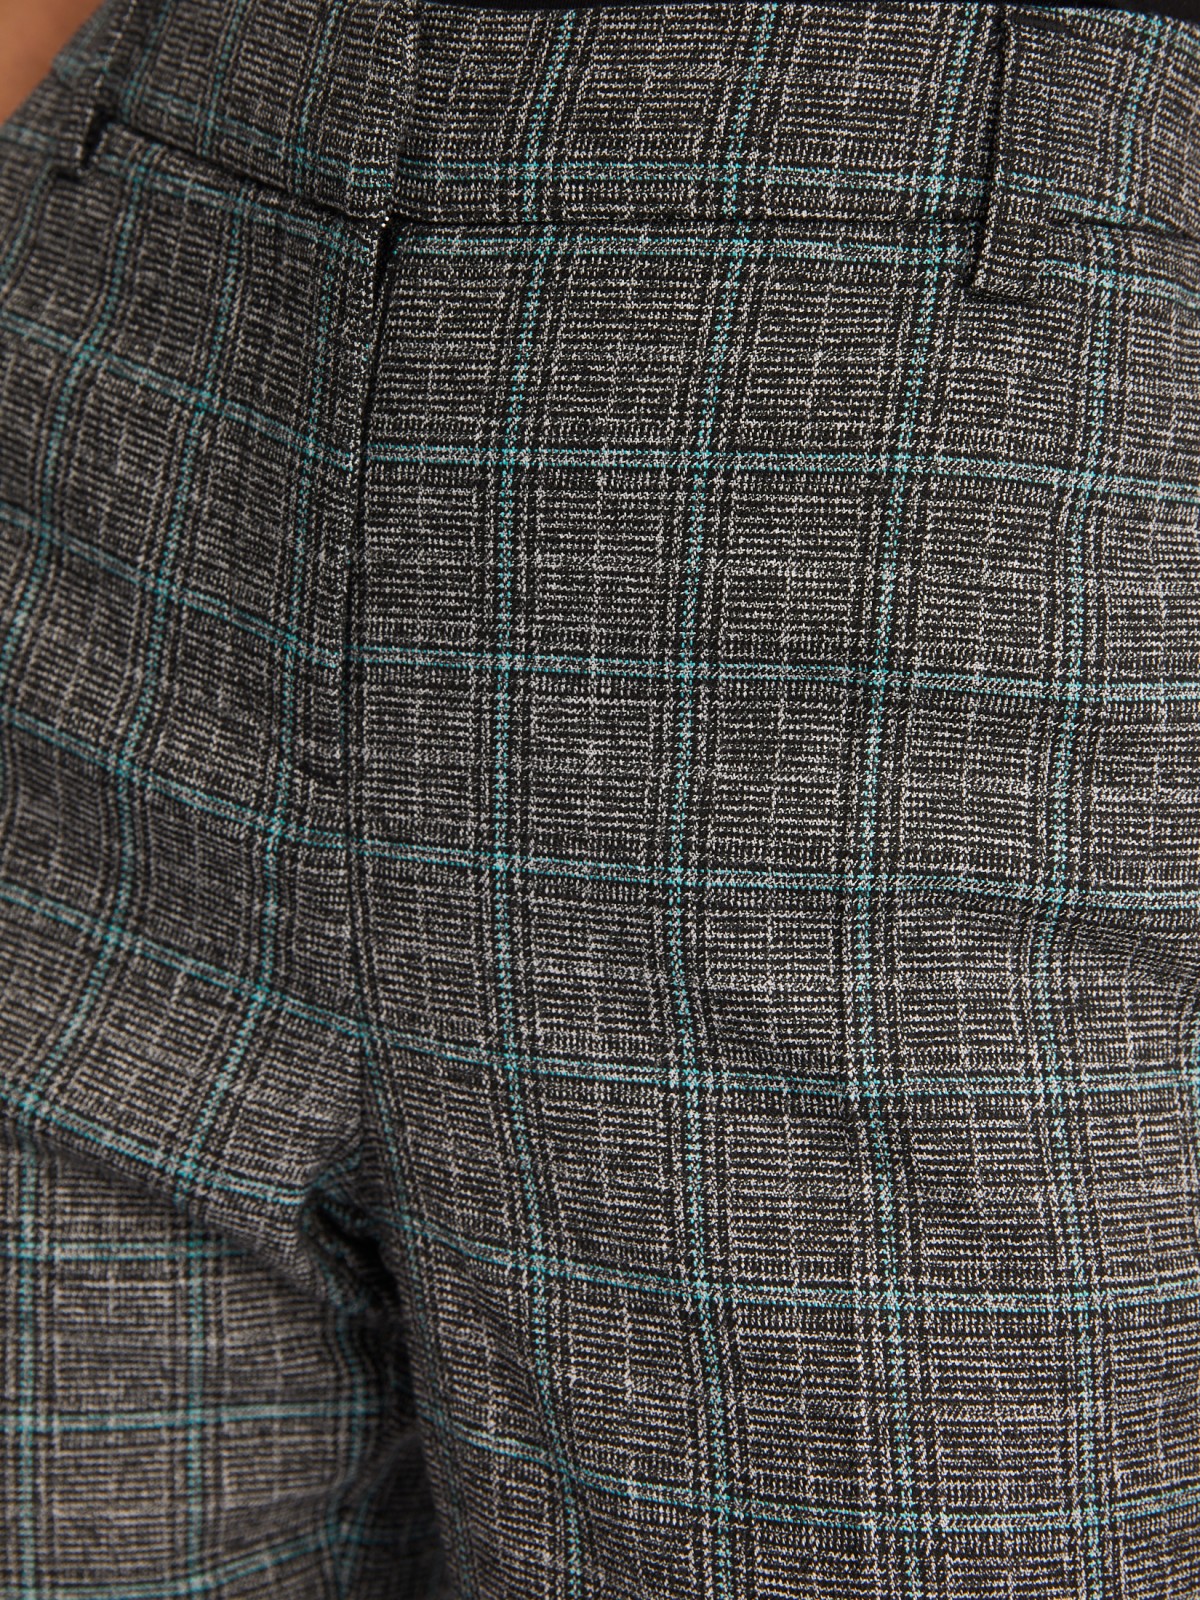 Офисные брюки прямого силуэта со стрелками и узором в клетку zolla 02333730L013, цвет темно-серый, размер XS - фото 4